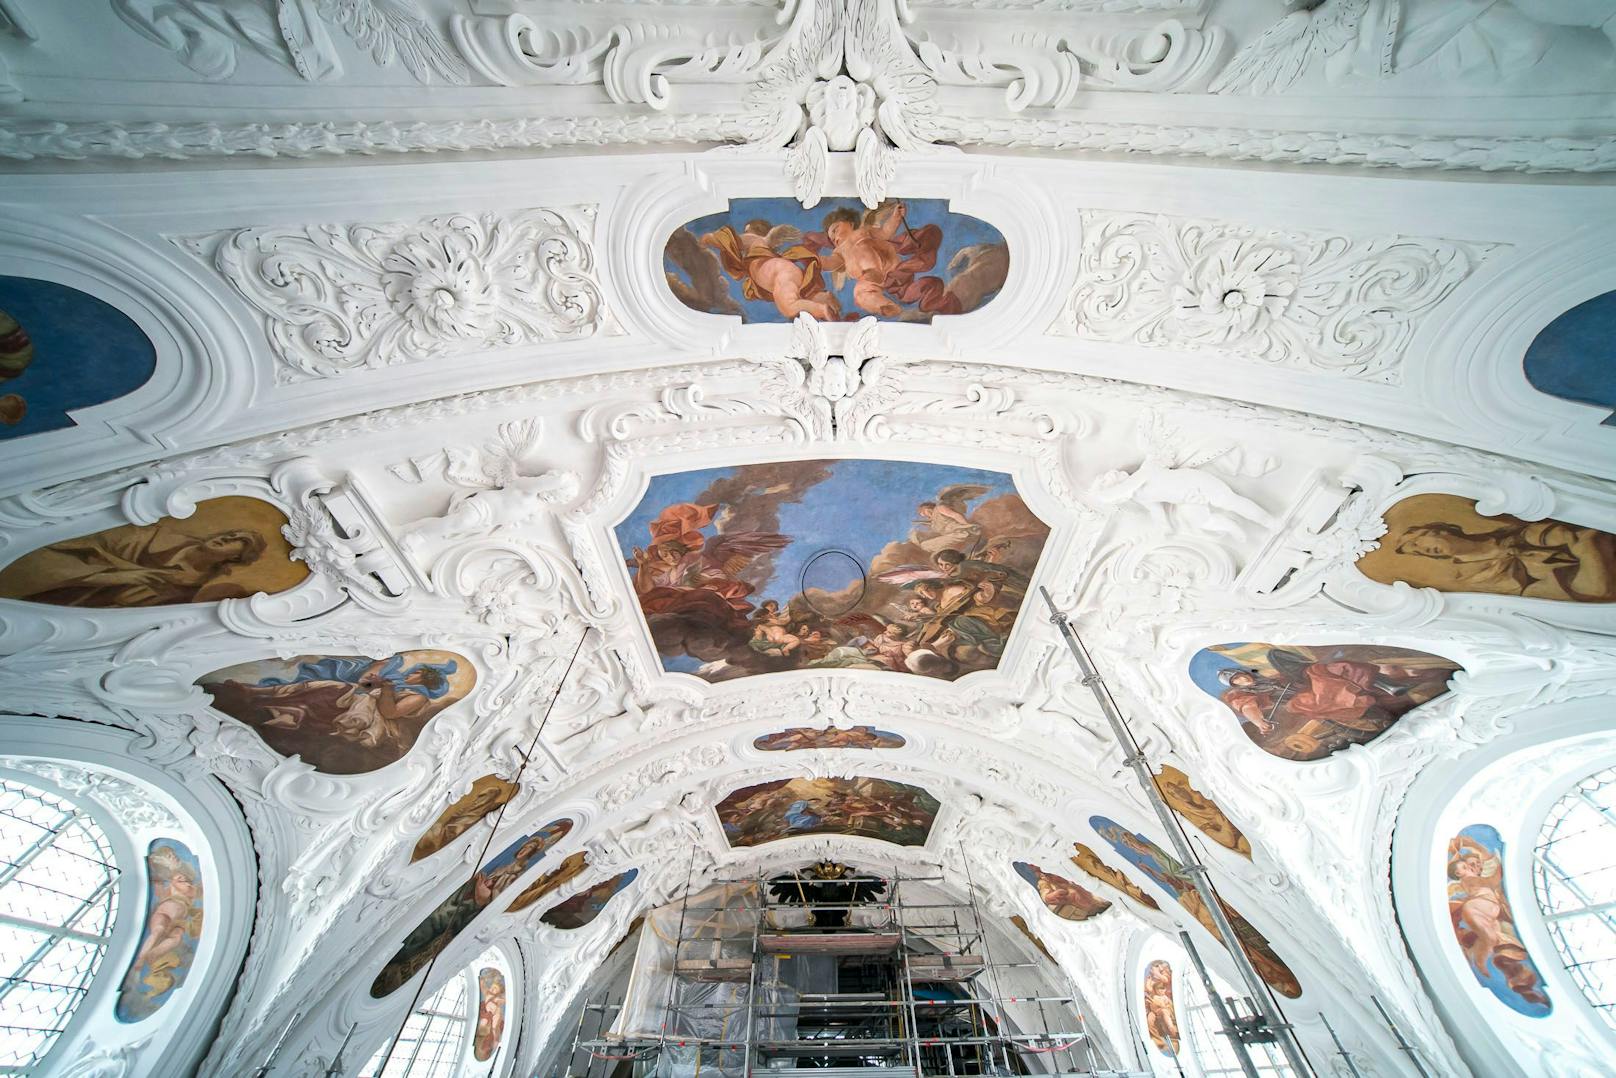 Der Marienzyklus an der Decke der Kirche setzt sich aus 46 einzelnen Fresken zusammen.